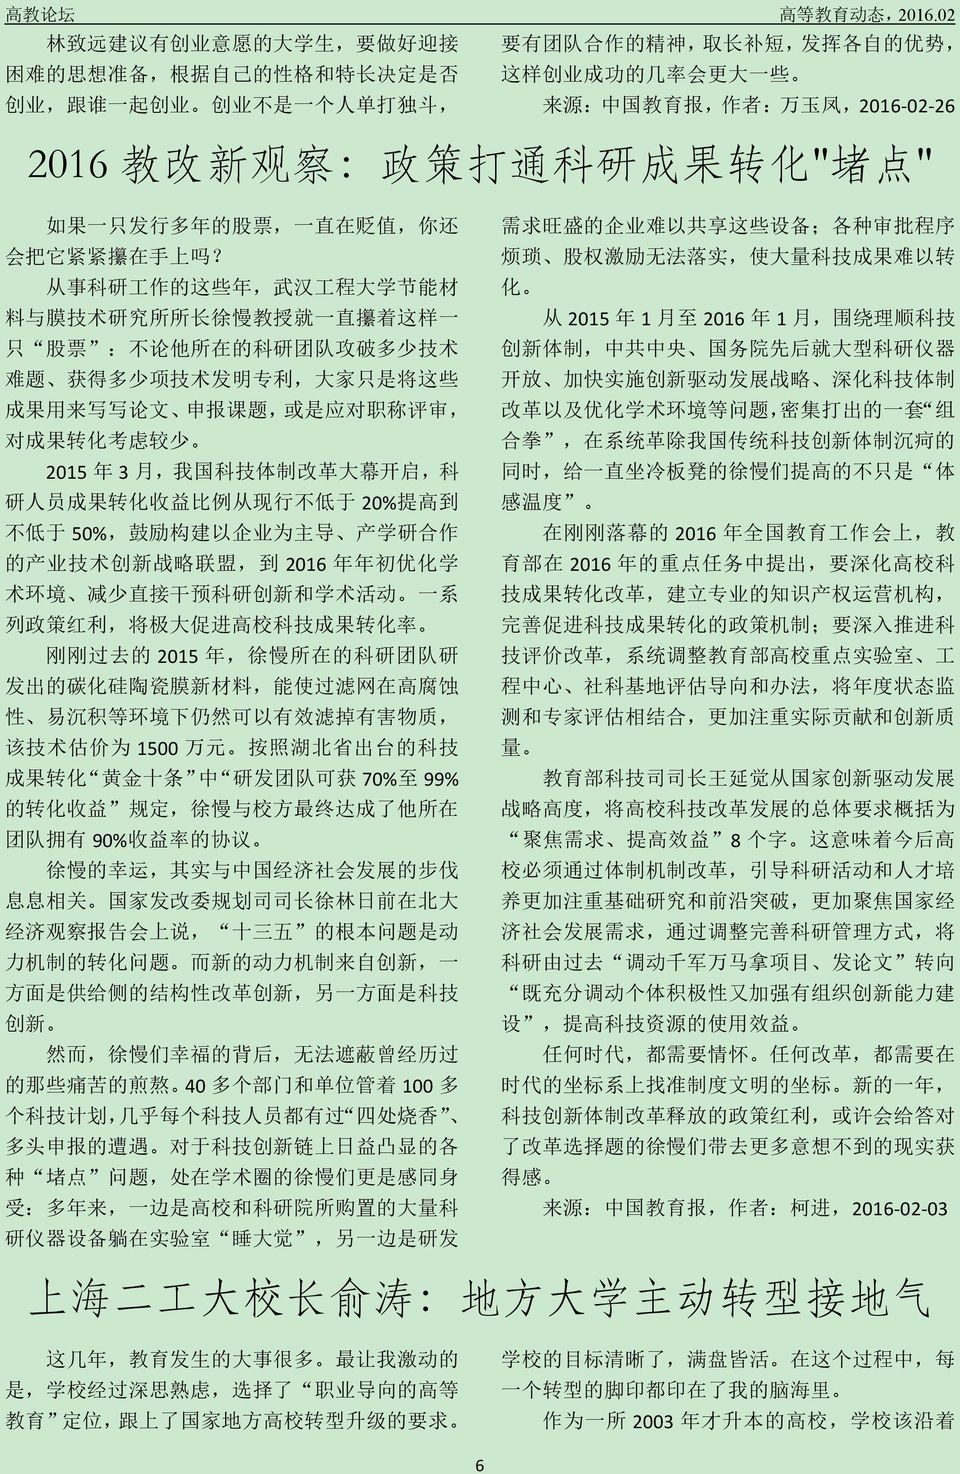 : 中 国 教 育 报, 作 者 : 万 玉 凤,2016-02-26 2016 教 改 新 观 察 : 政 策 打 通 科 研 成 果 转 化 " 堵 点 " 如 果 一 只 发 行 多 年 的 股 票, 一 直 在 贬 值, 你 还 会 把 它 紧 紧 攥 在 手 上 吗?